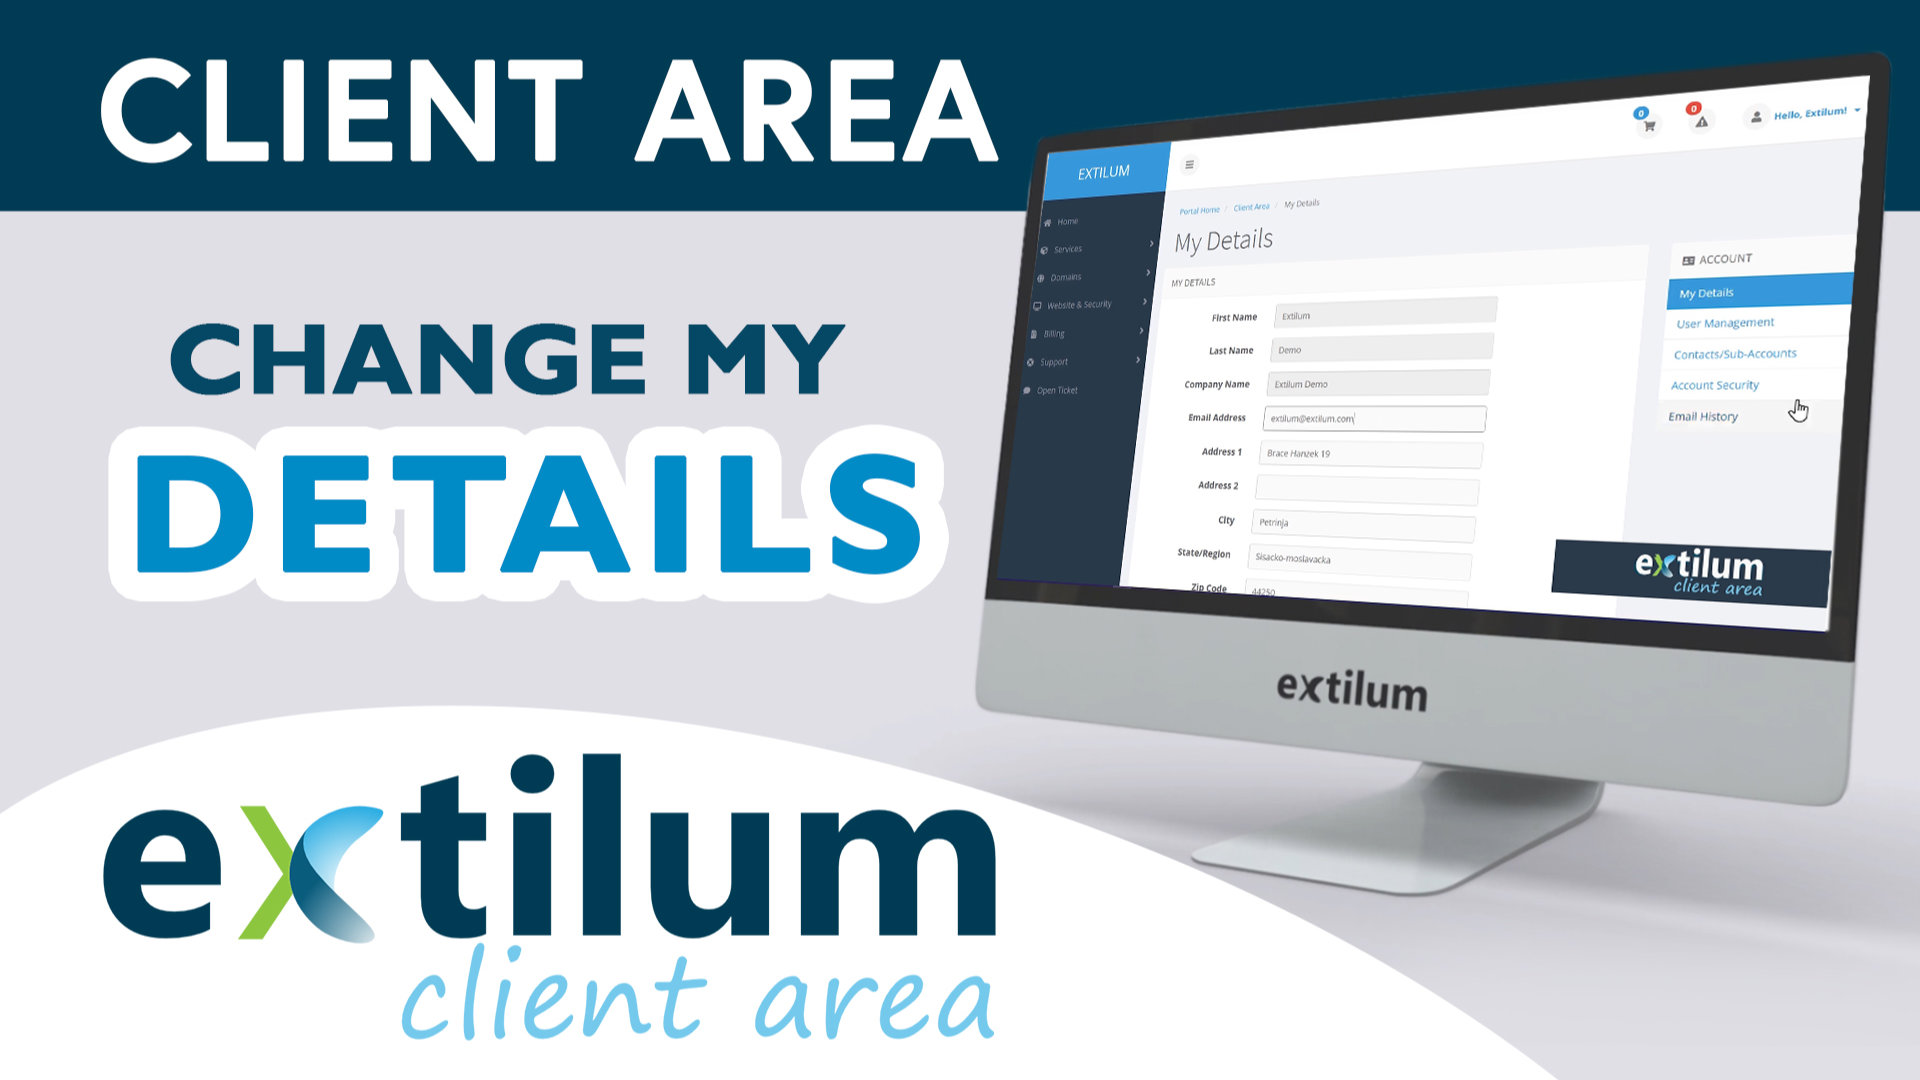 Extilum Client Area - Change my details